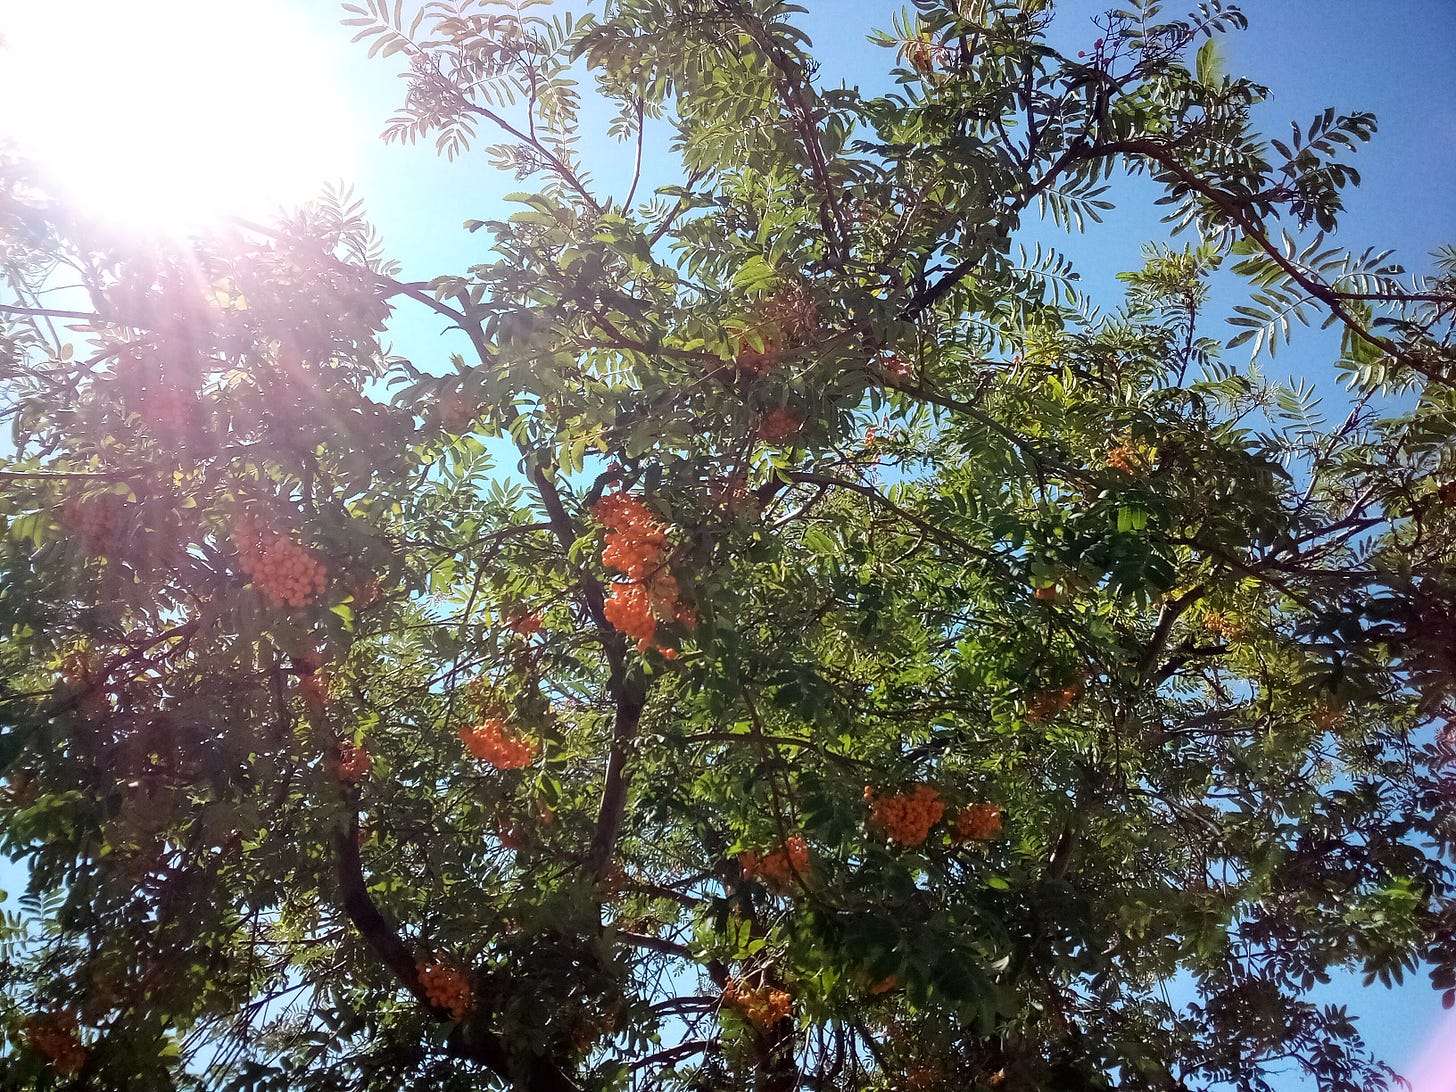 Sun through green tree branches